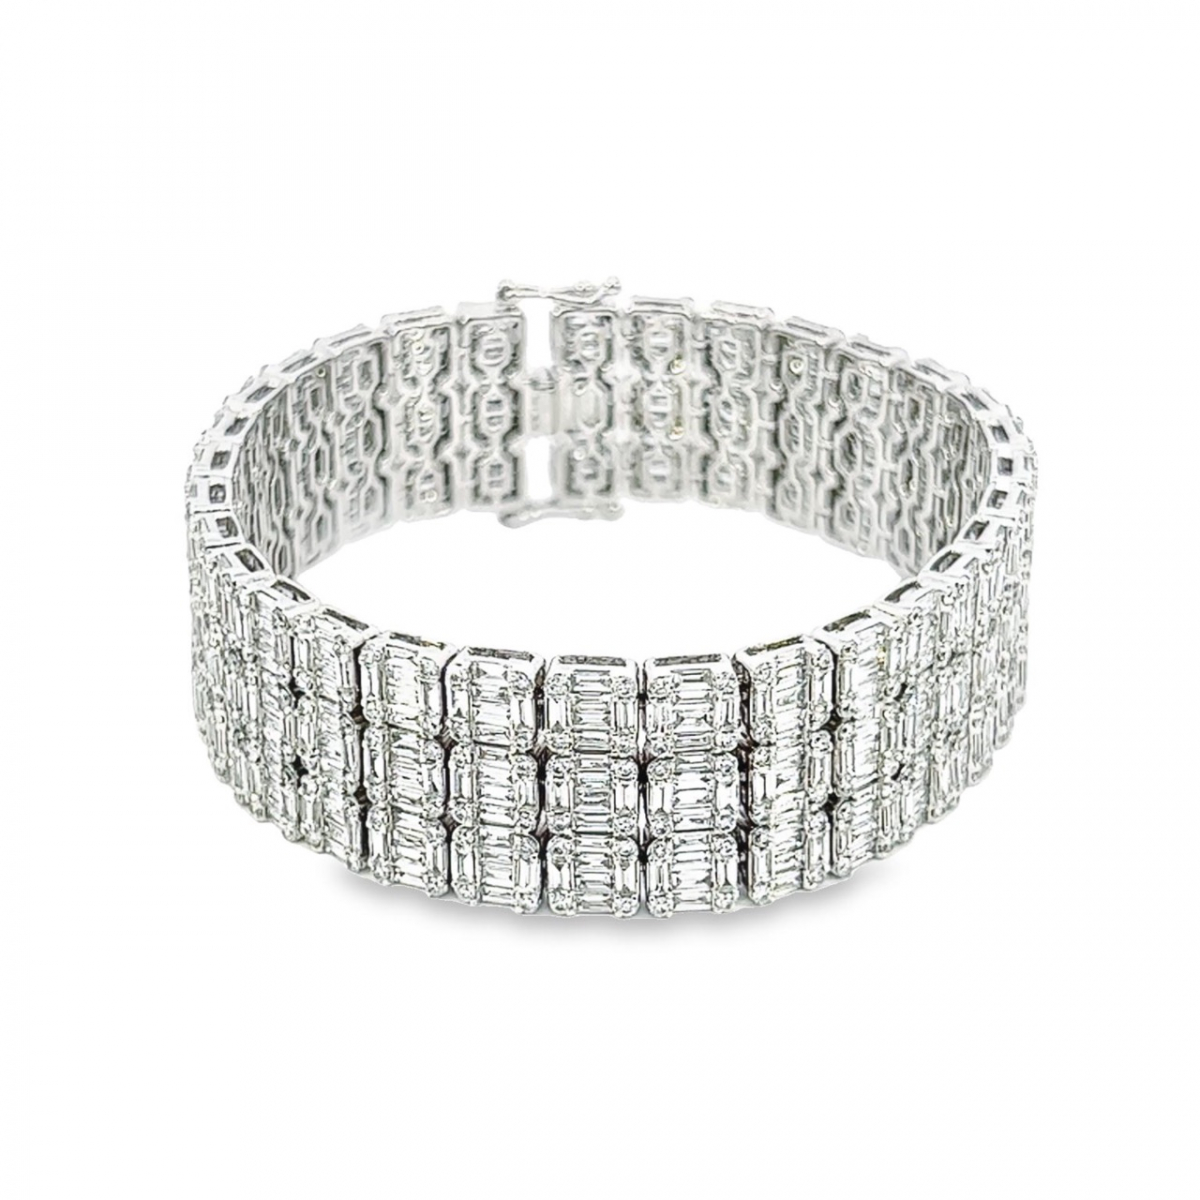 Shop Simulated Diamond Bracelets Online  Imitation Diamond Bracelets